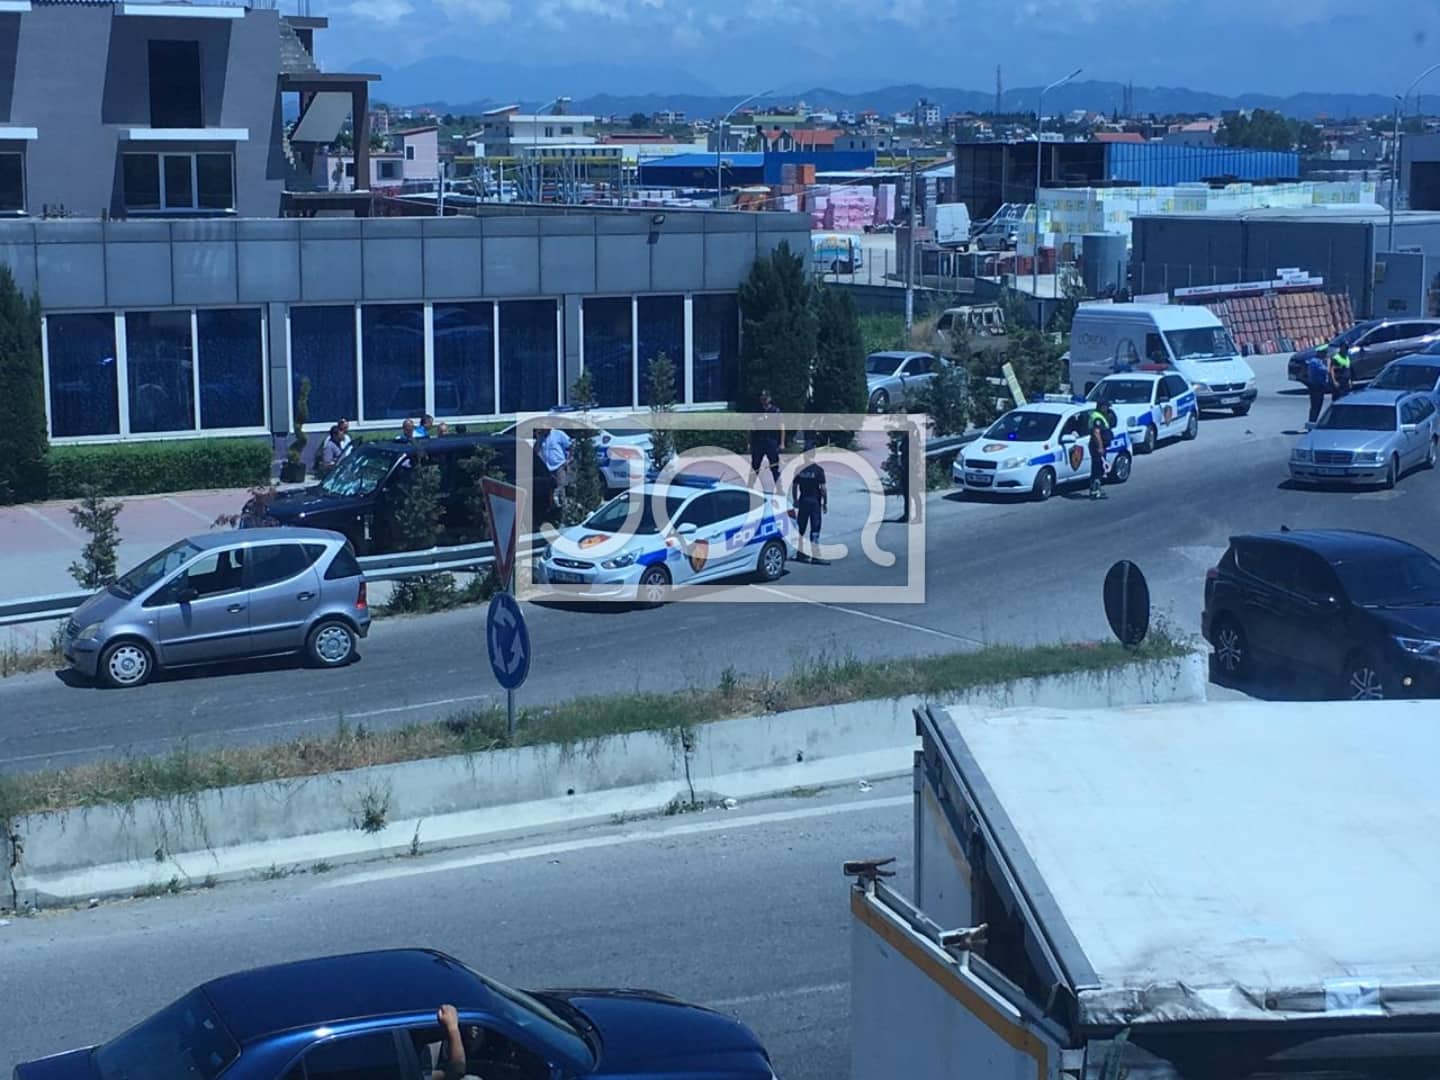 Kërcet arma në Durrës, atentat ushtarit të Lul Berishës